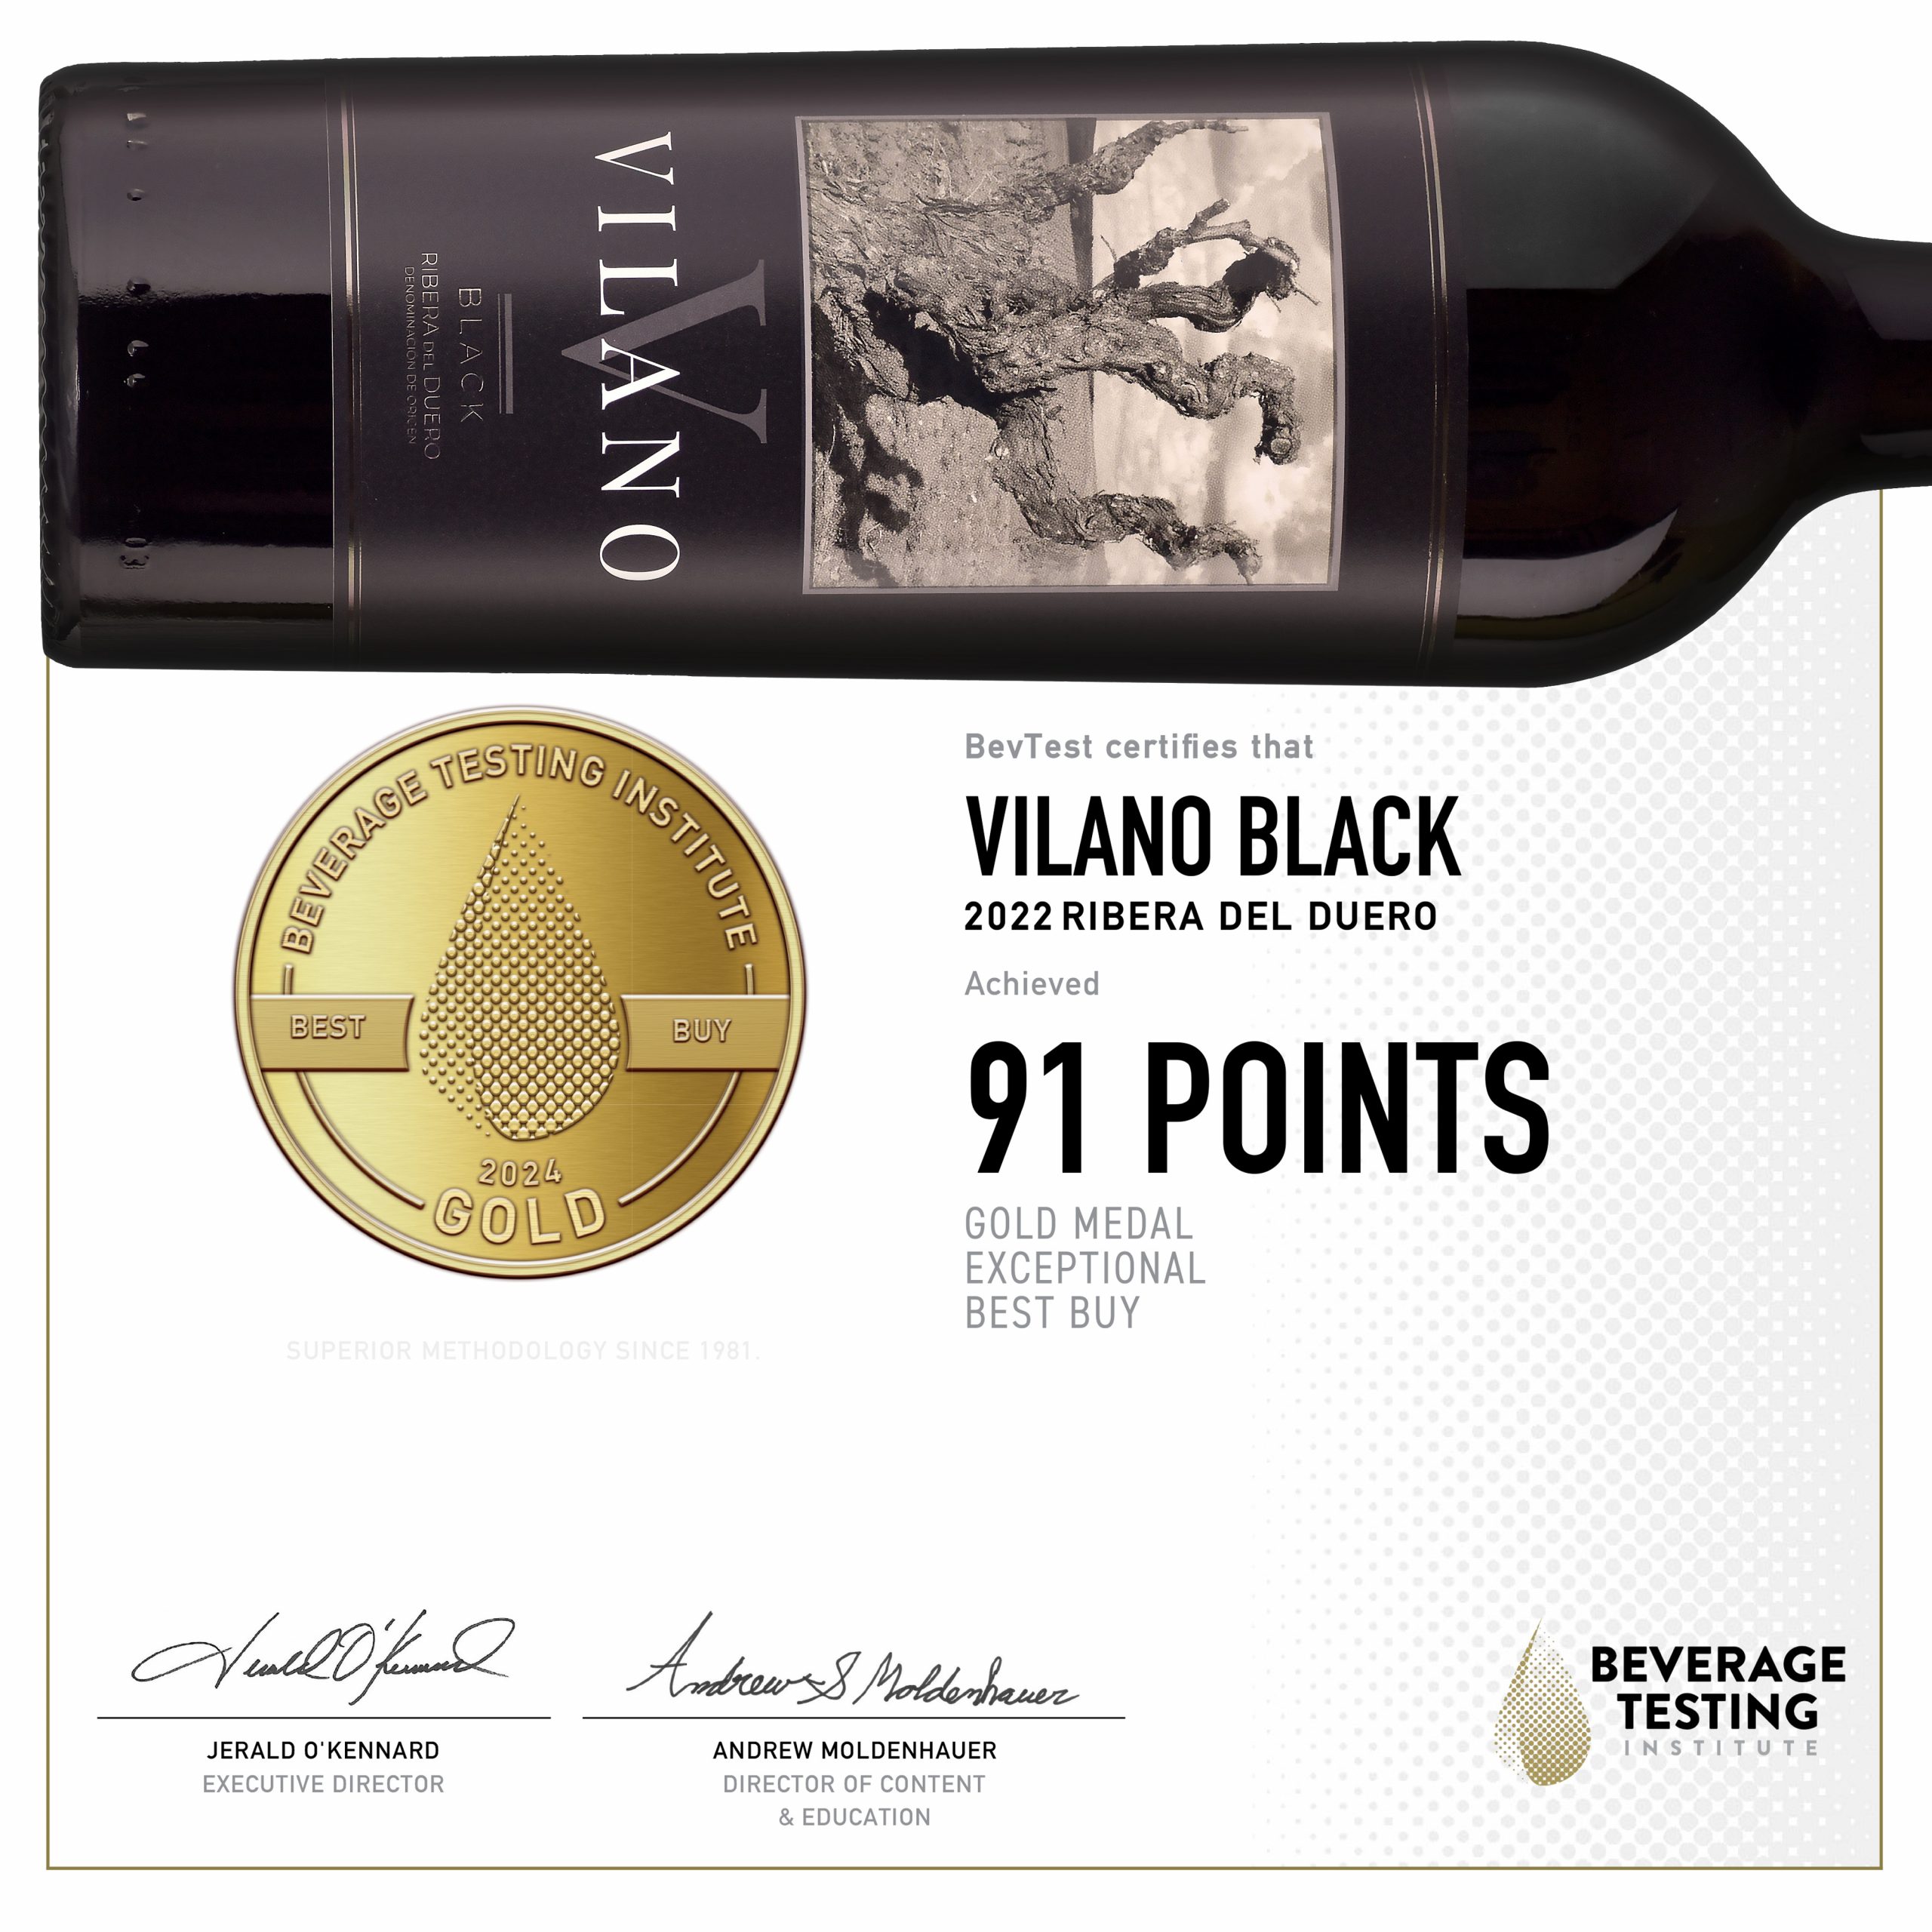 Vilano Black gold medal in Beverage Testing